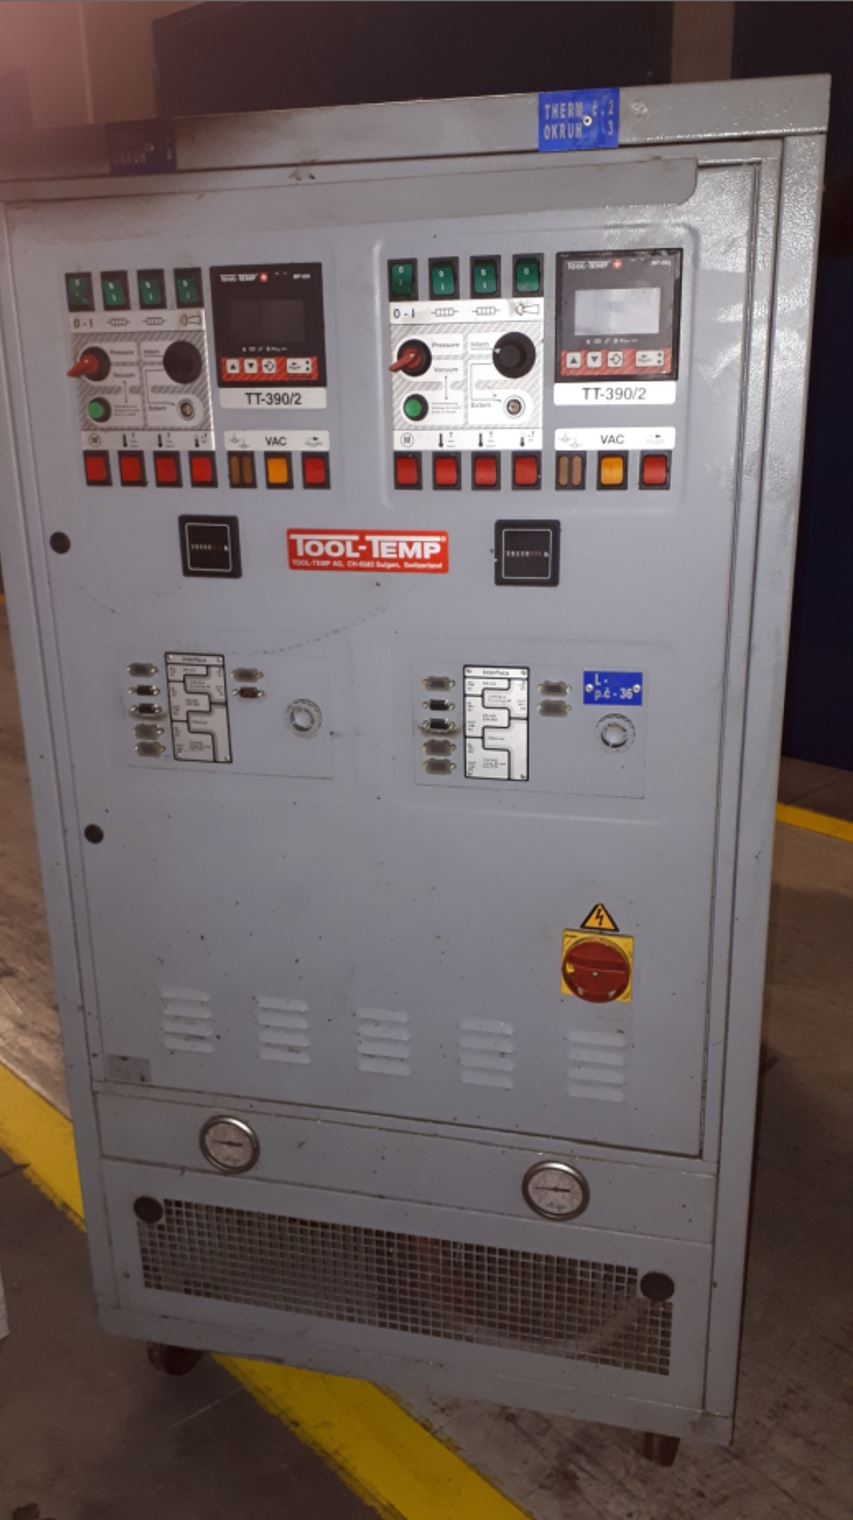 Tool Temp TT-390/2A temperature control unit ZU2094, used